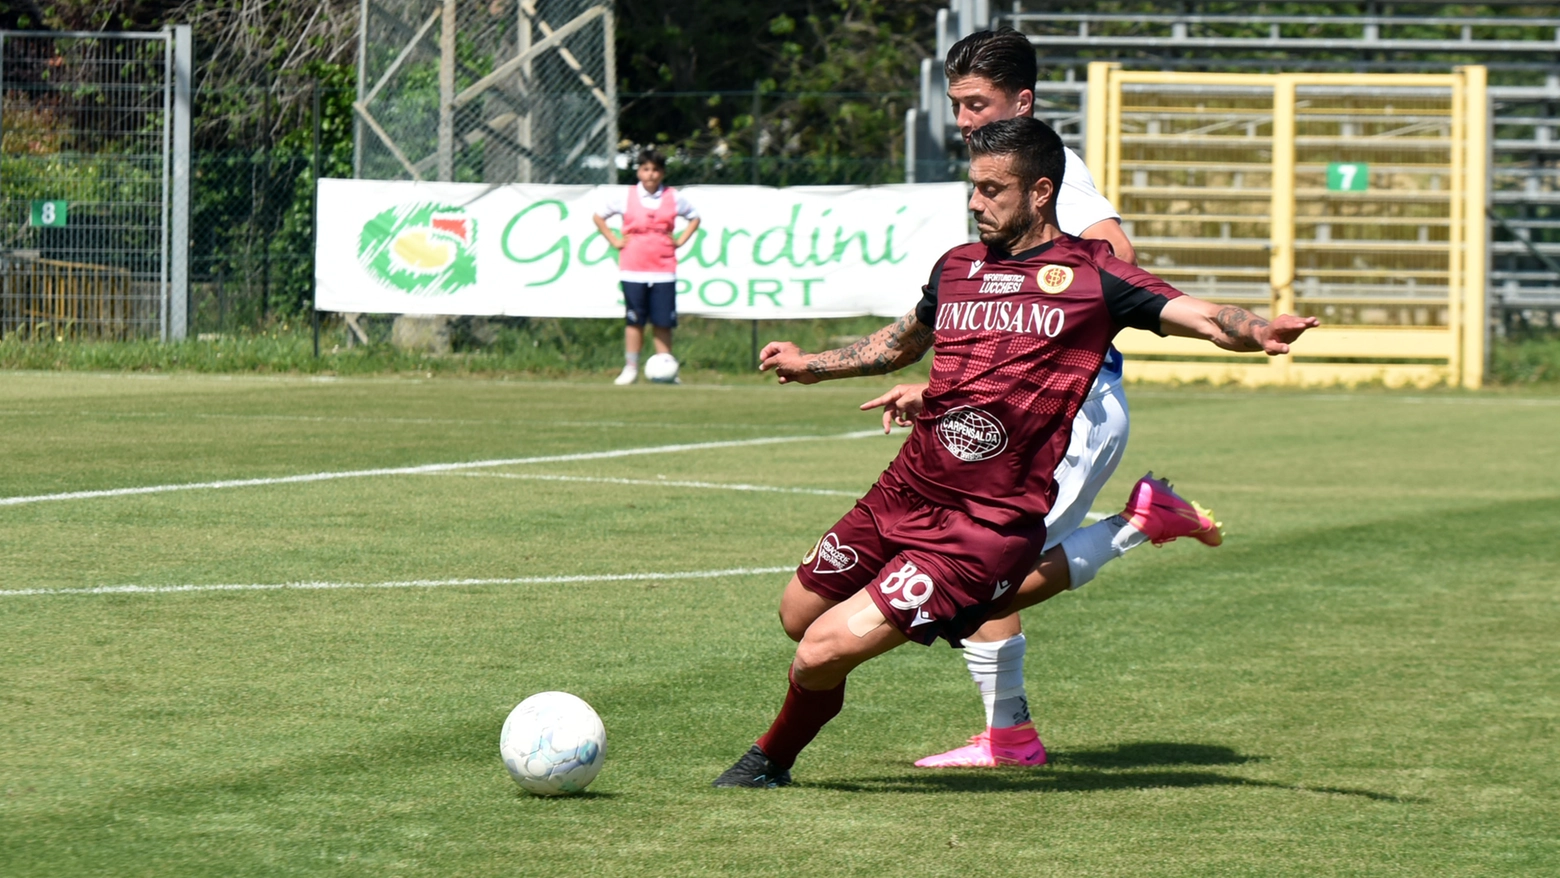 Follonica Gavorrano-Livorno 1-2 (Foto Agostini)